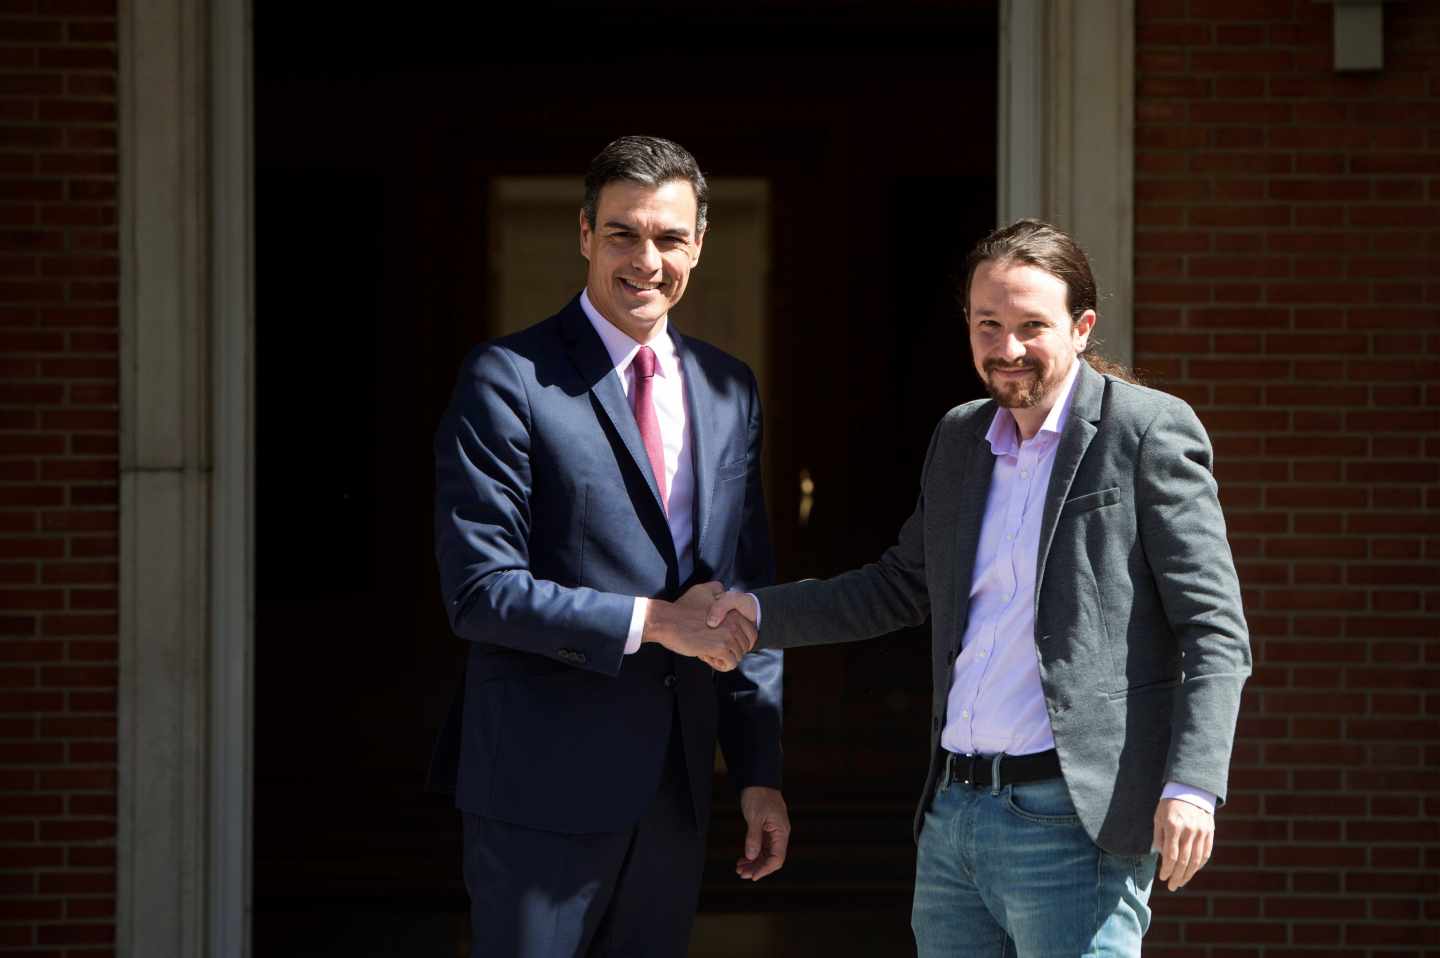 Pedro Sánchez y Pablo Iglesias antes de su reunión en Moncloa tras las elecciones del 28A.